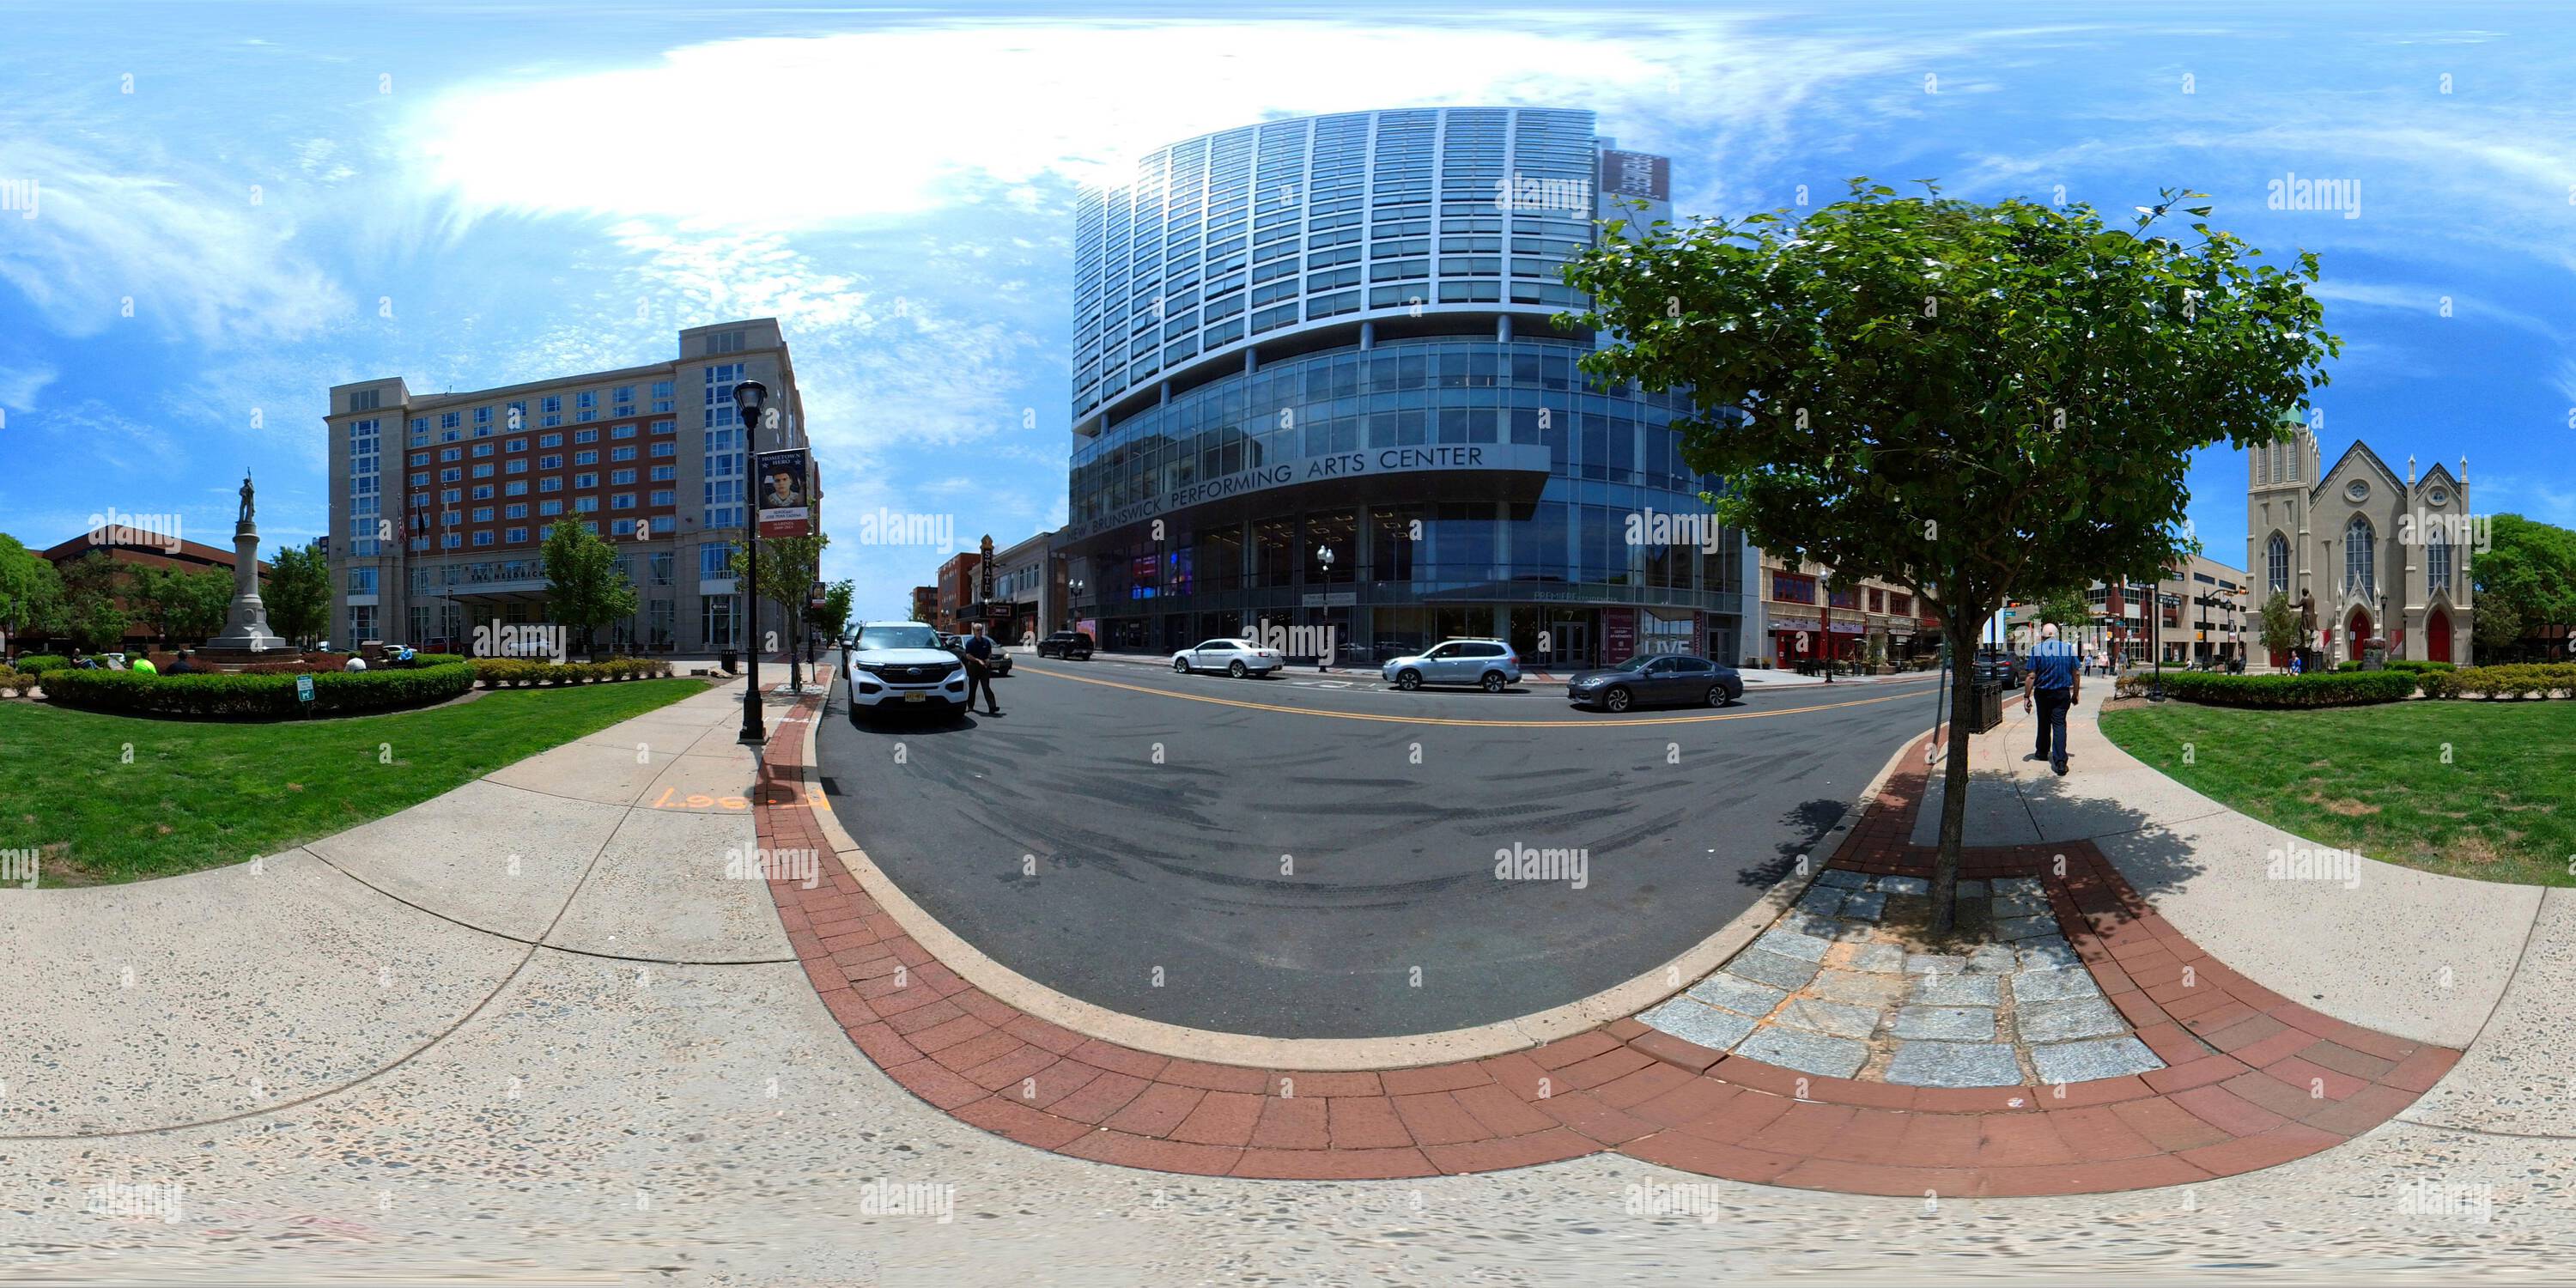 Visualizzazione panoramica a 360 gradi di Centro di New Brunswick, New Jersey, all'incrocio tra Livingston Avenue e George Street con l'Heldrich Hotel e il centro delle arti dello spettacolo di New Brunswick